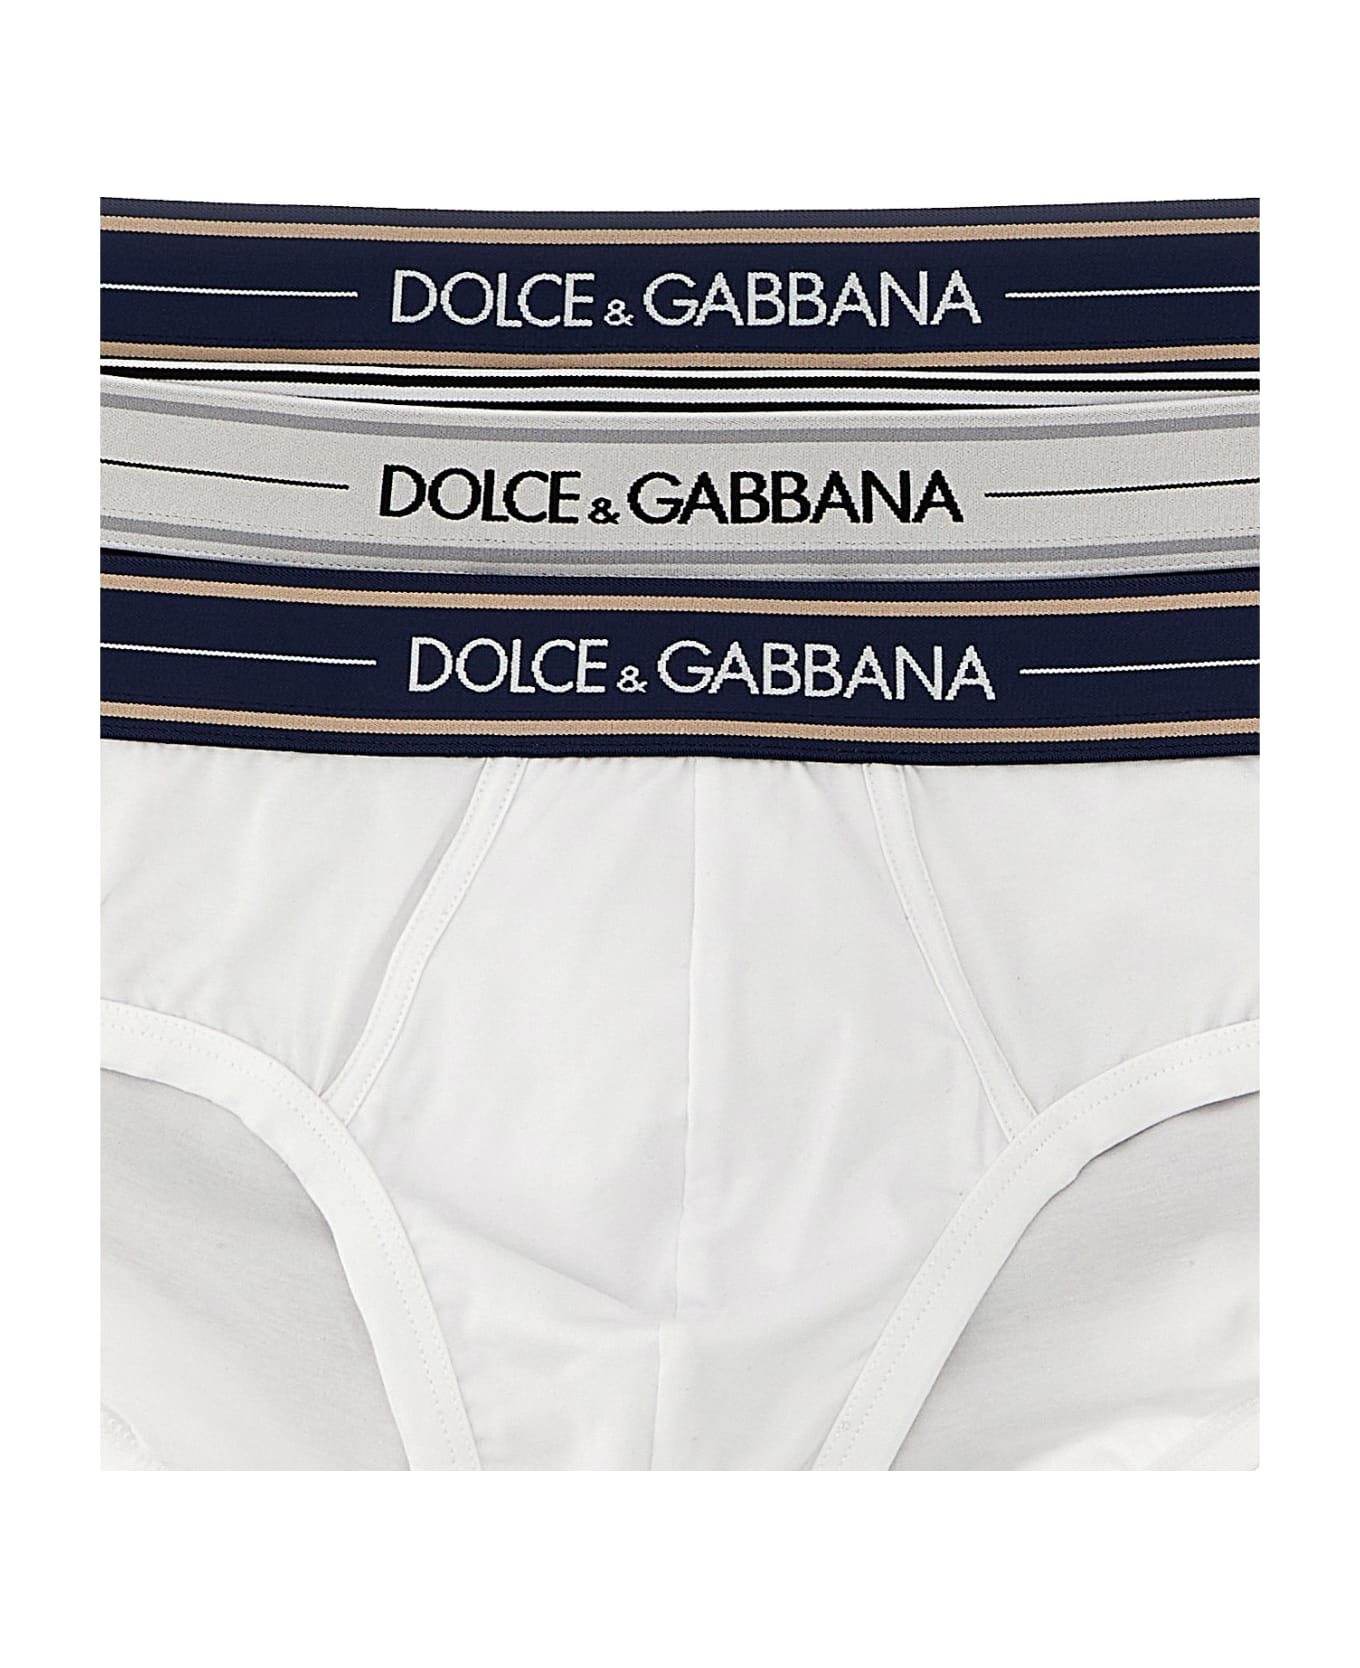 Dolce & Gabbana Brando Briefs - Multicolor ショーツ